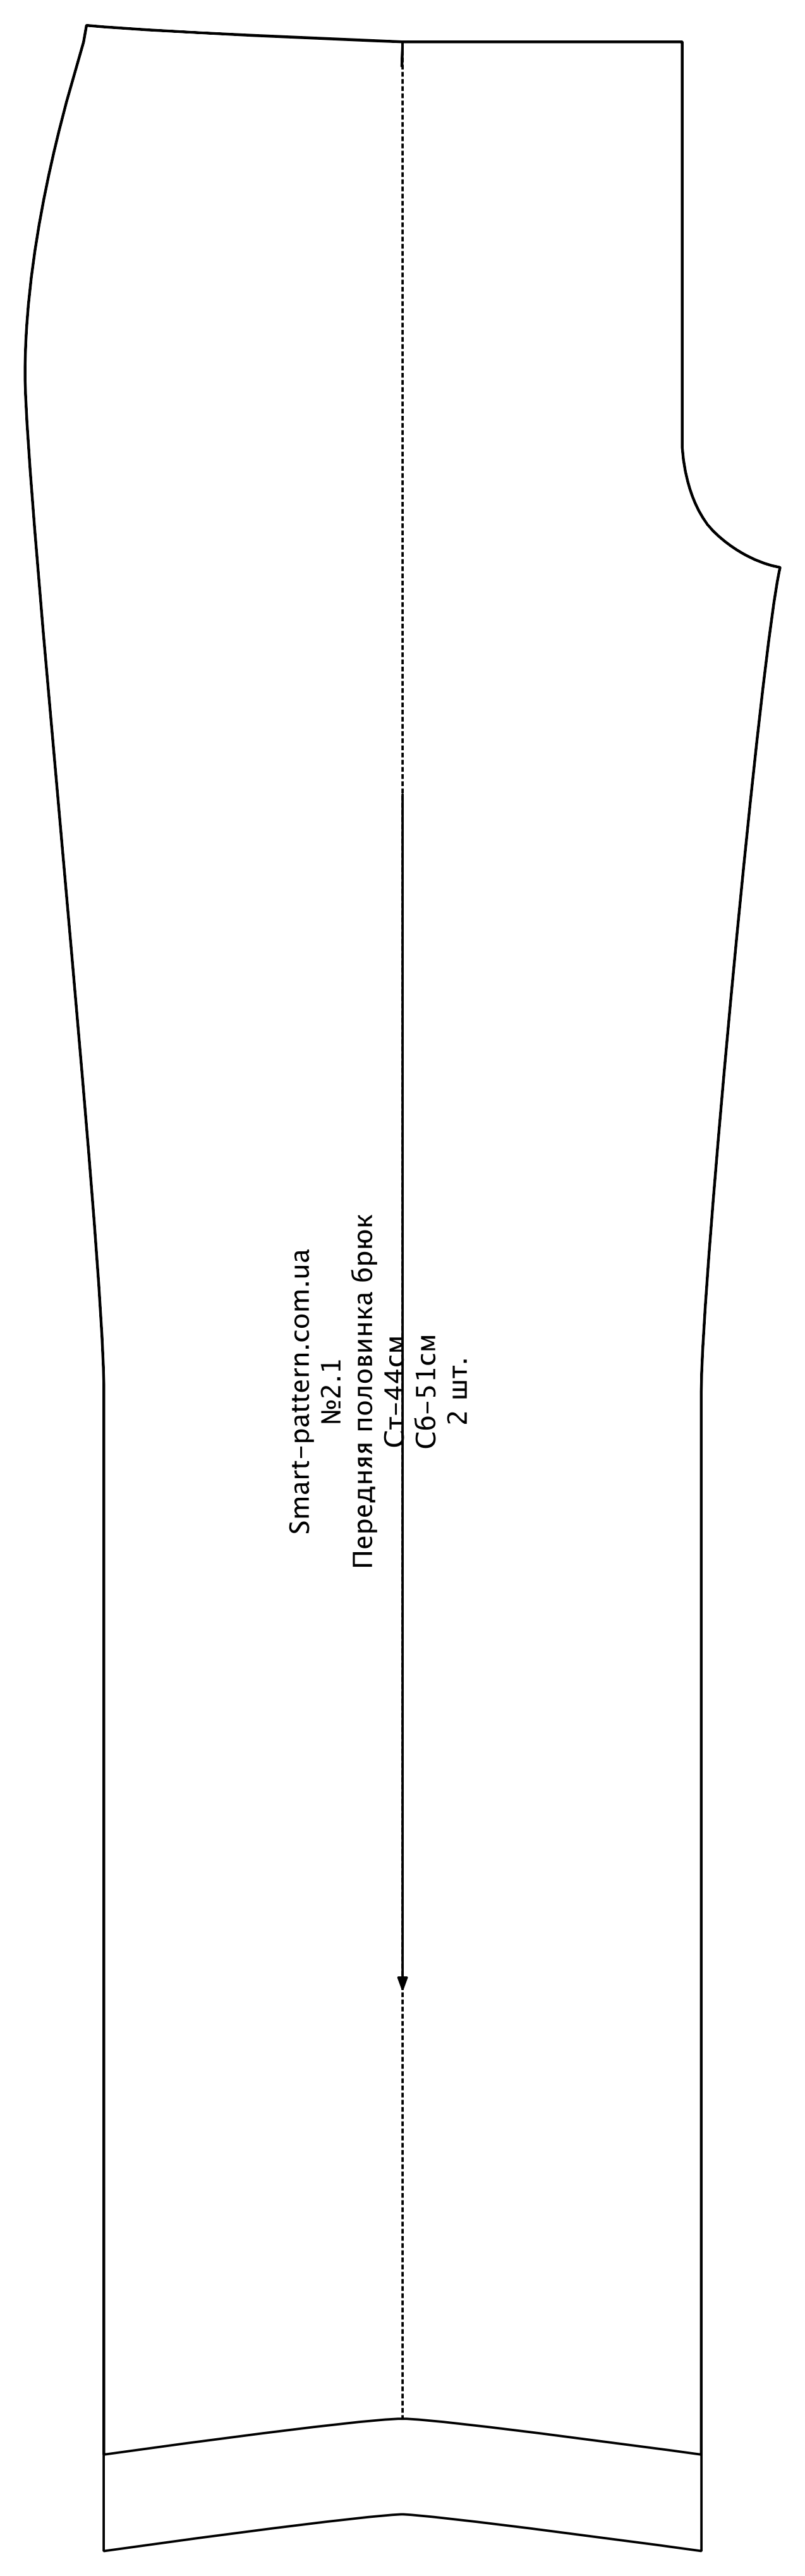 Базова основа штанів на умовно пропорційну фігуру за методикою «М. Л. Вороніна» (російська мова)